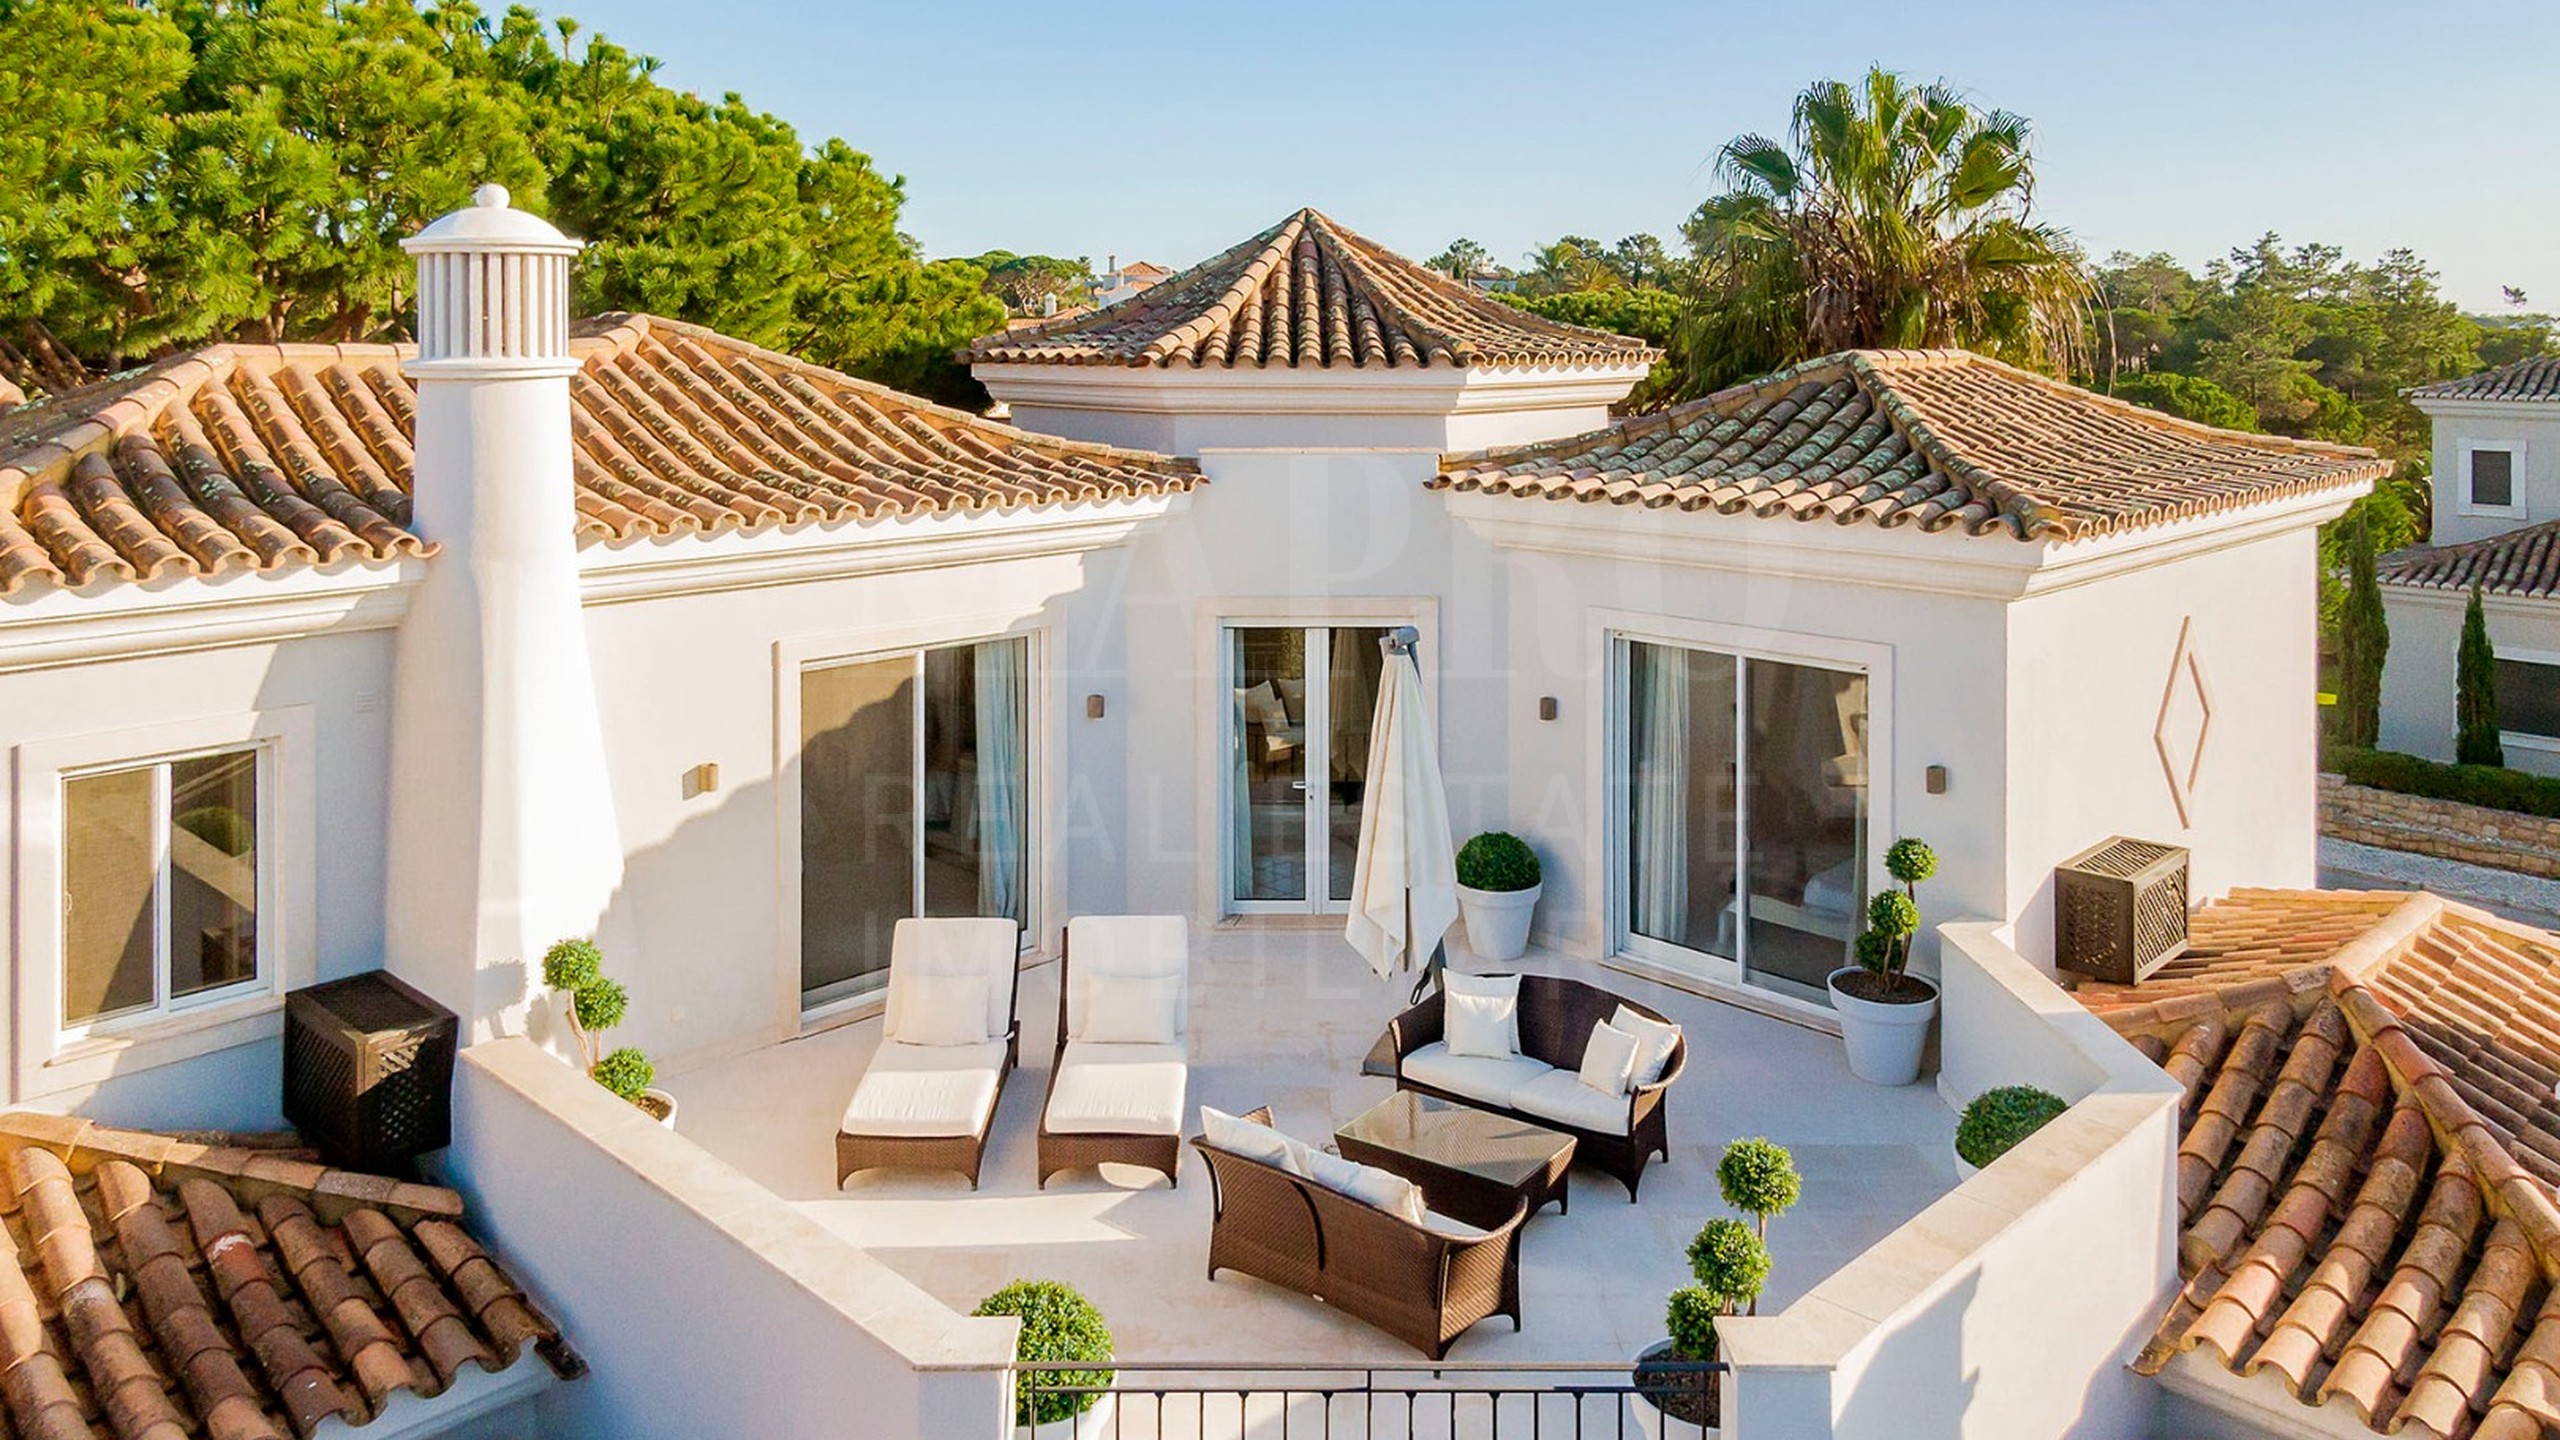 6 bedroom Villa for sale in Algarve